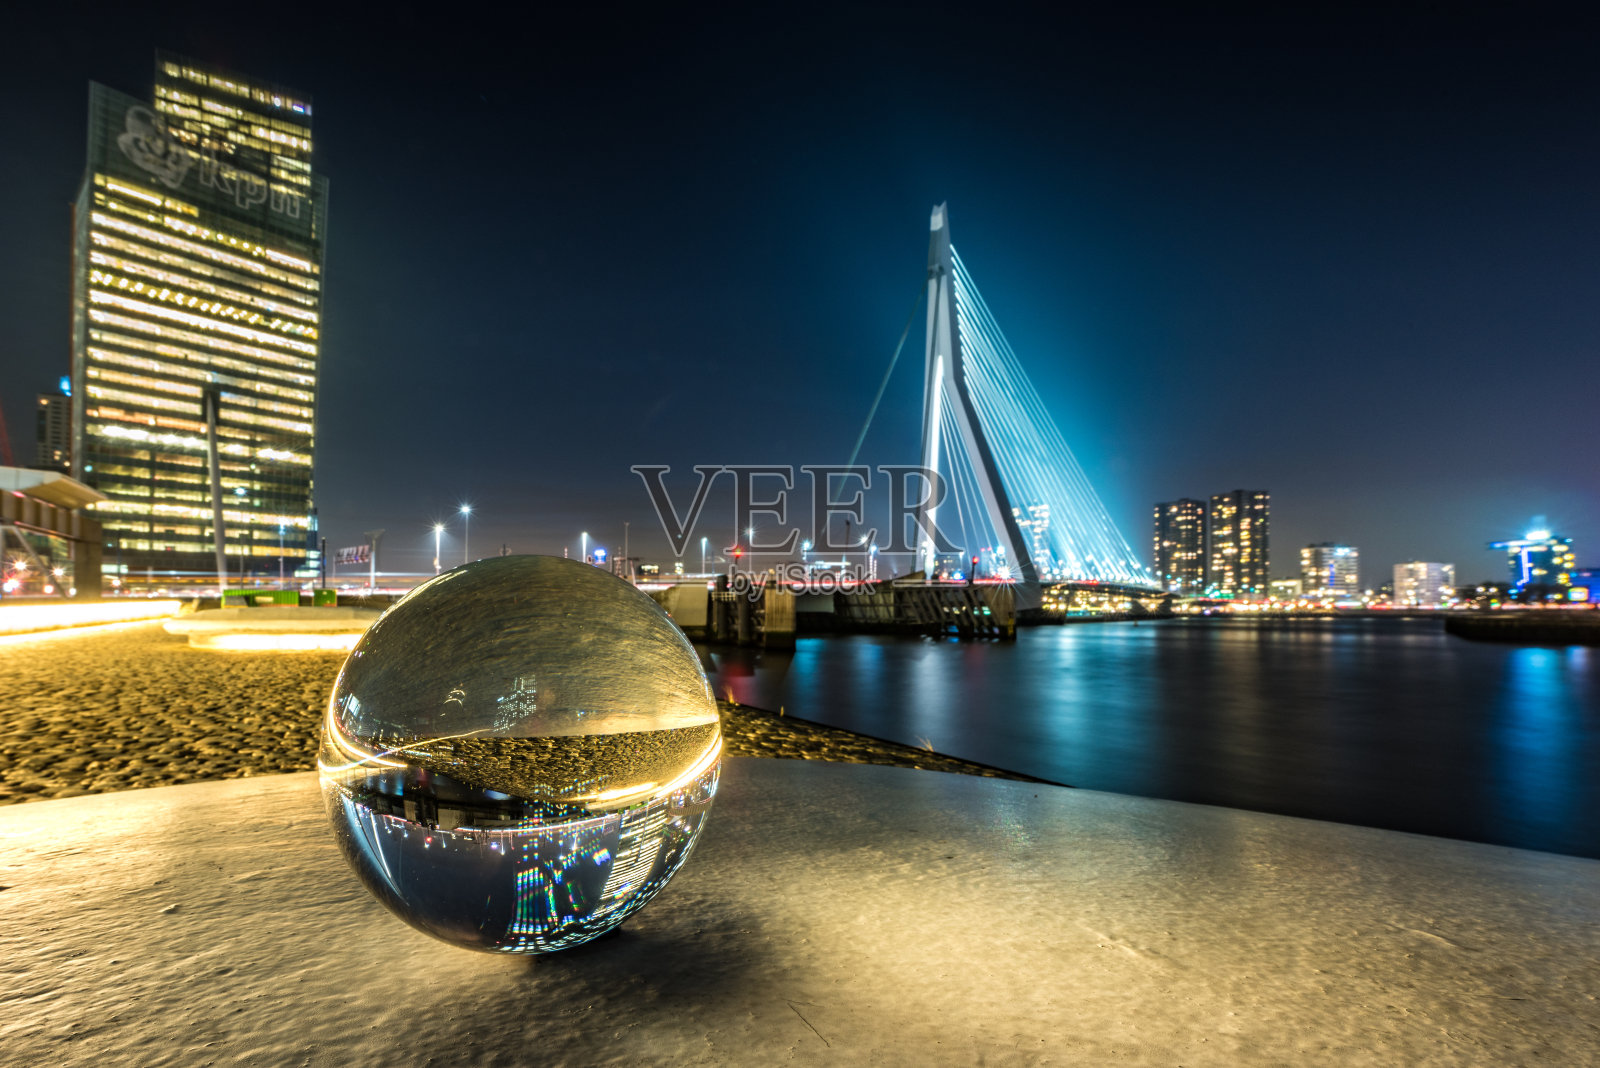 鹿特丹市中心和晚上的水晶球照片摄影图片